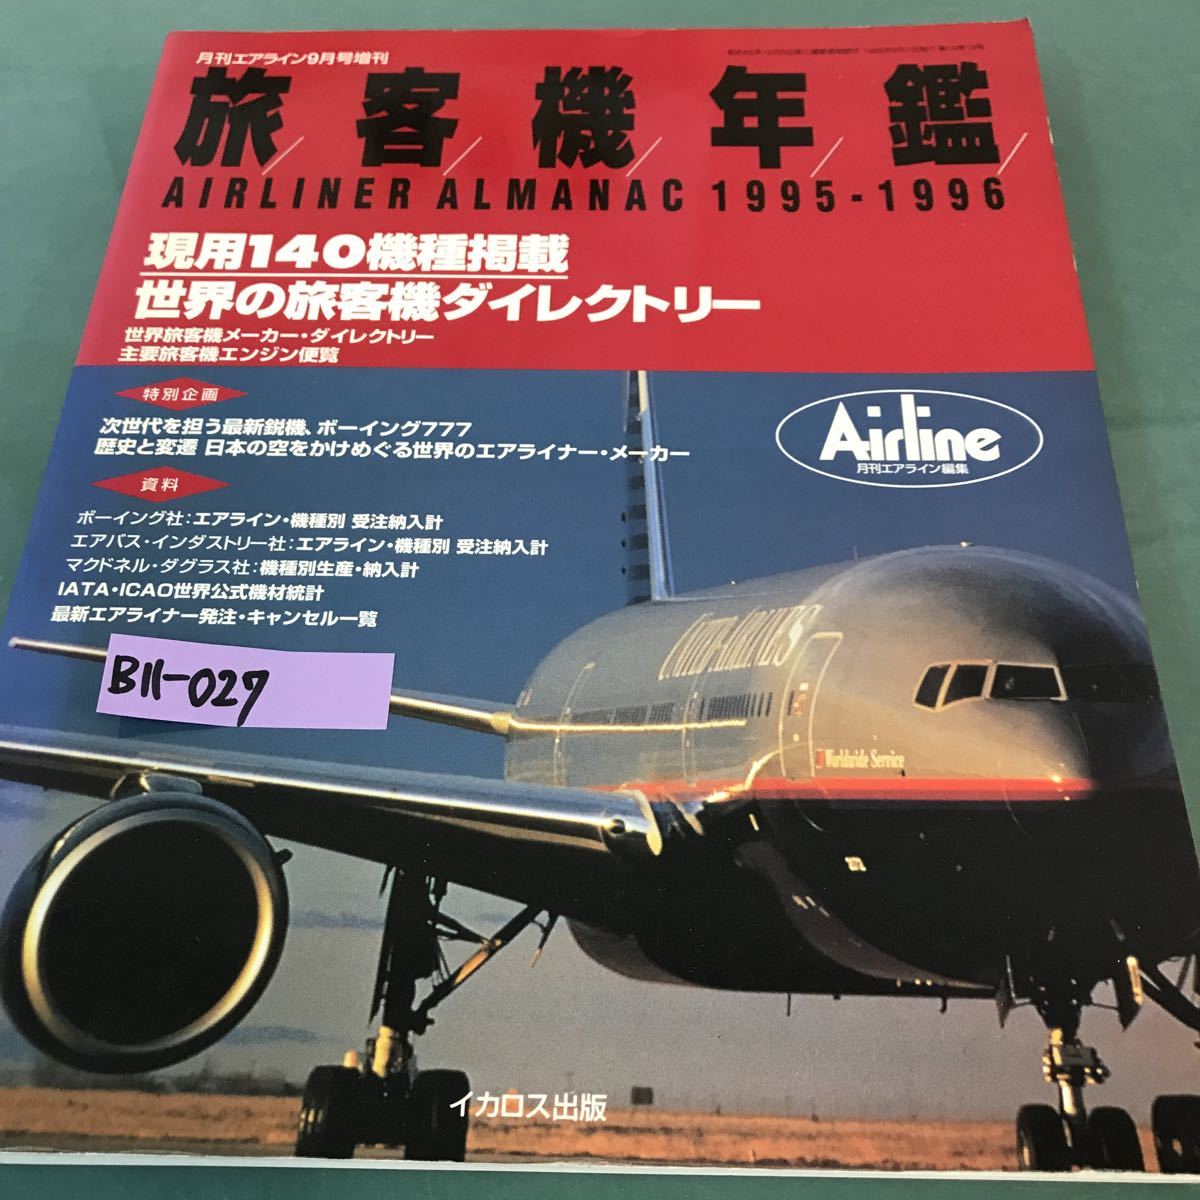 B11-027 旅客機年鑑。月刊エアライン9月号増刊。現用140機種掲載。世界の旅客機ダイレクトリー。1995年9月1日発行。_画像1